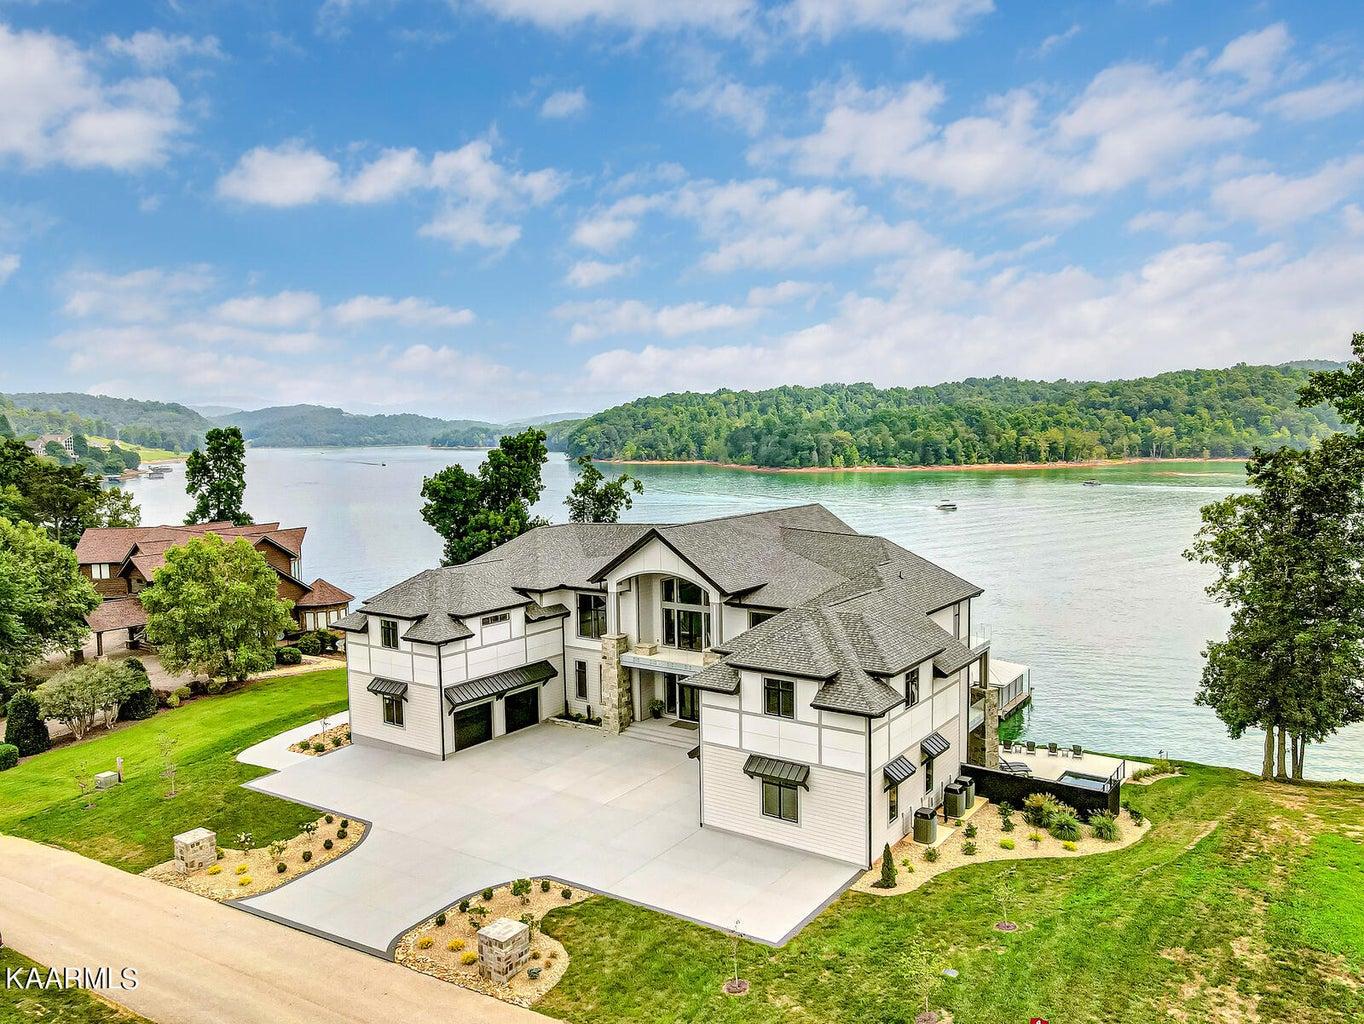 Norris Lake Real Estate - Image# 2